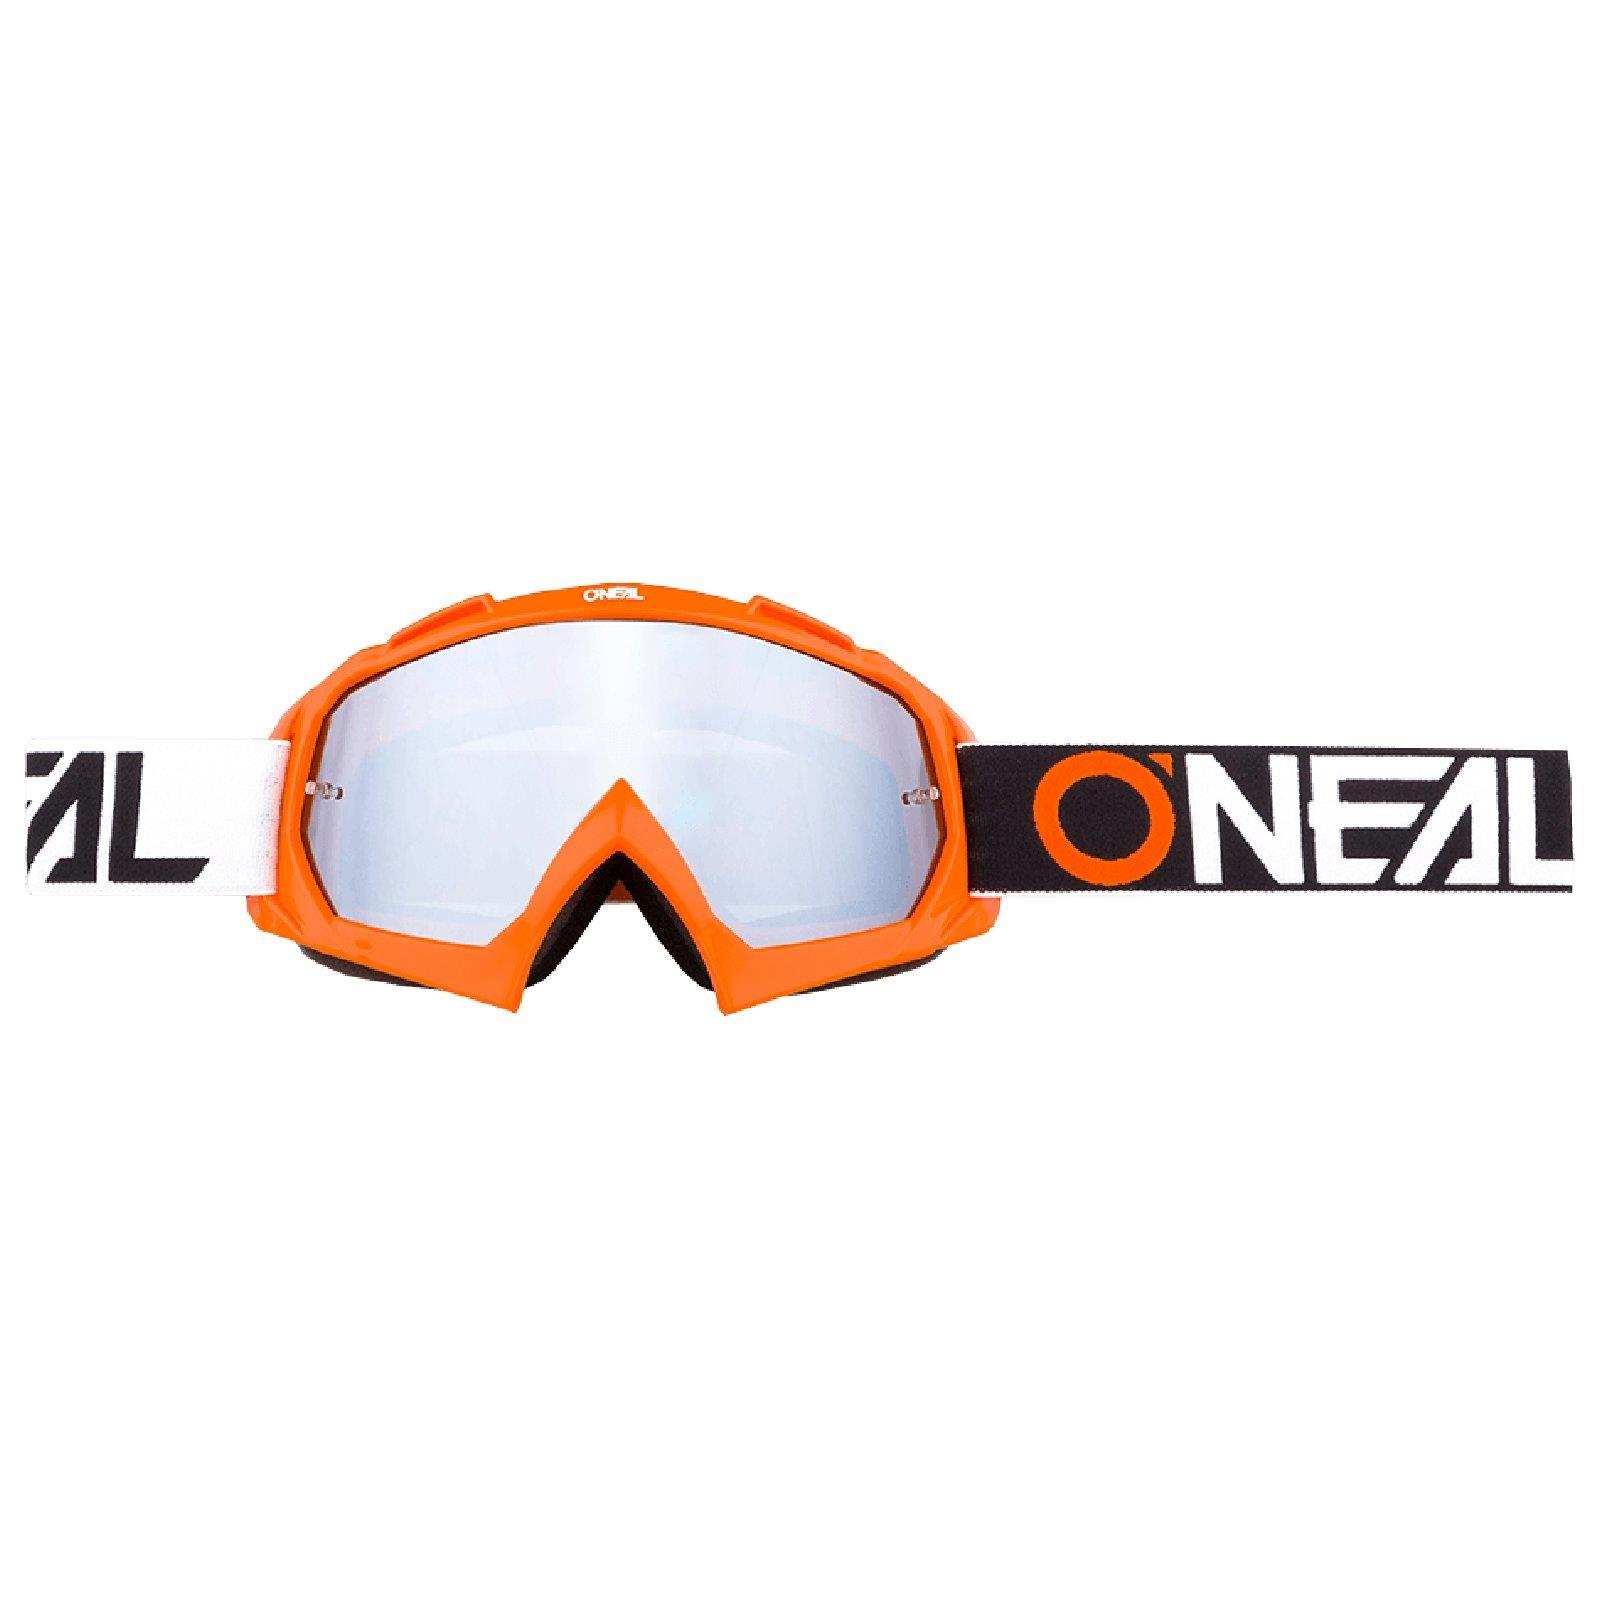 Hochwertige 1,2 mm-3D-Linse für ultimative Klarheit UV-Schutz O'NEAL MX MTB DH FR Downhill Freeride B-10 Goggle TWOFACE Fahrrad- & Motocross-Brille 